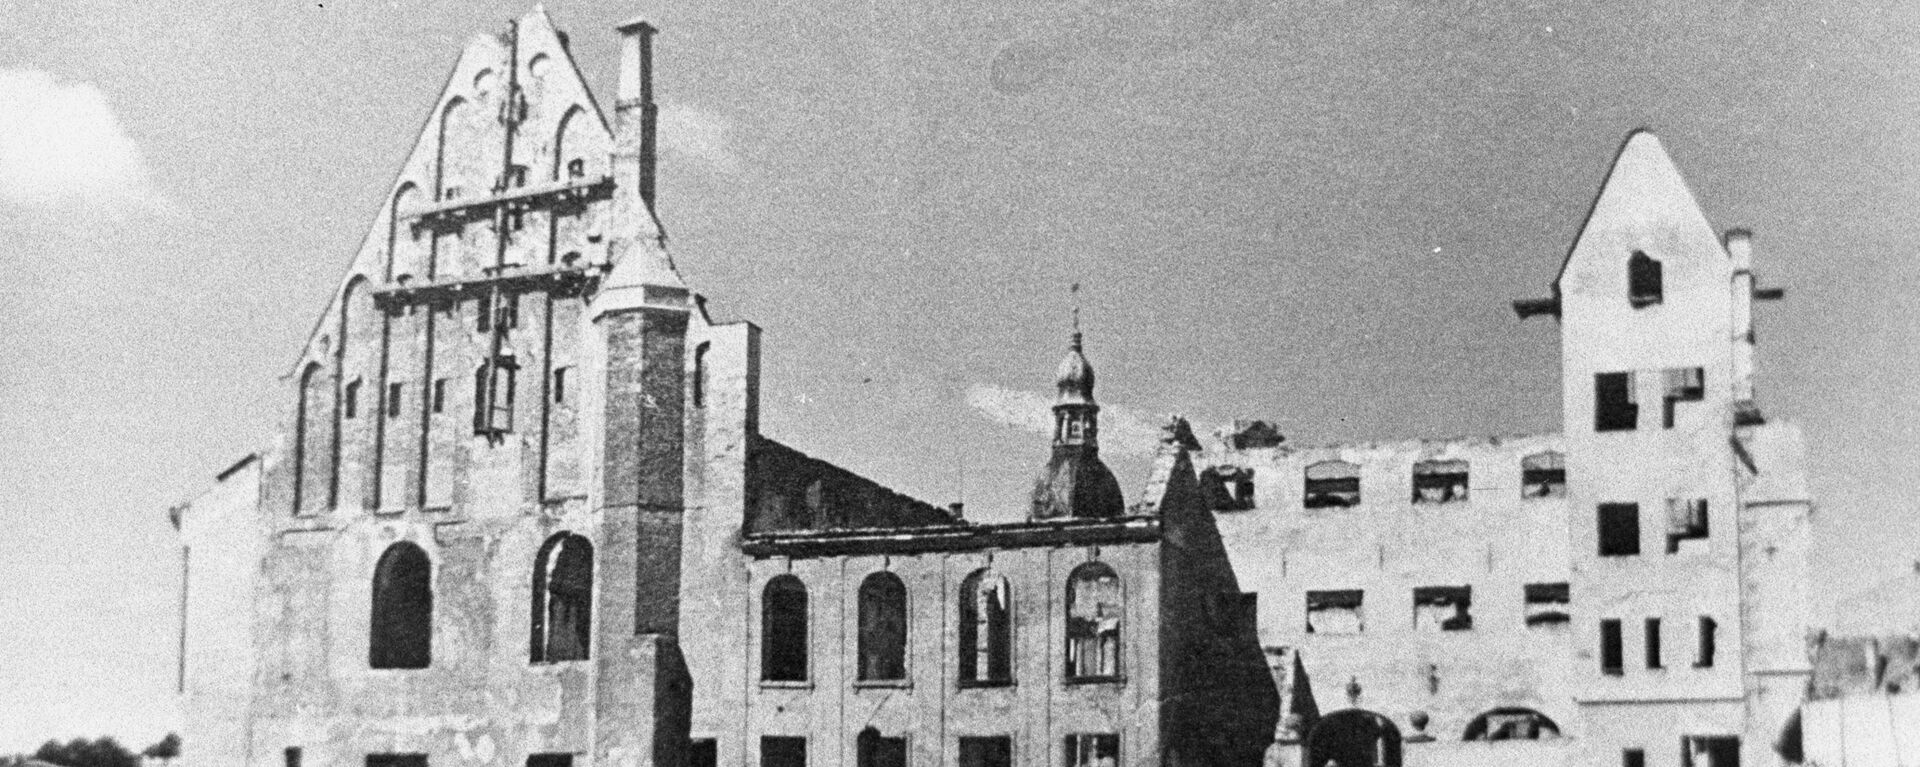 Дом Черноголовых сгорел в Риге 28 июня 1941 года в ходе военных действий - Sputnik Латвия, 1920, 21.06.2021